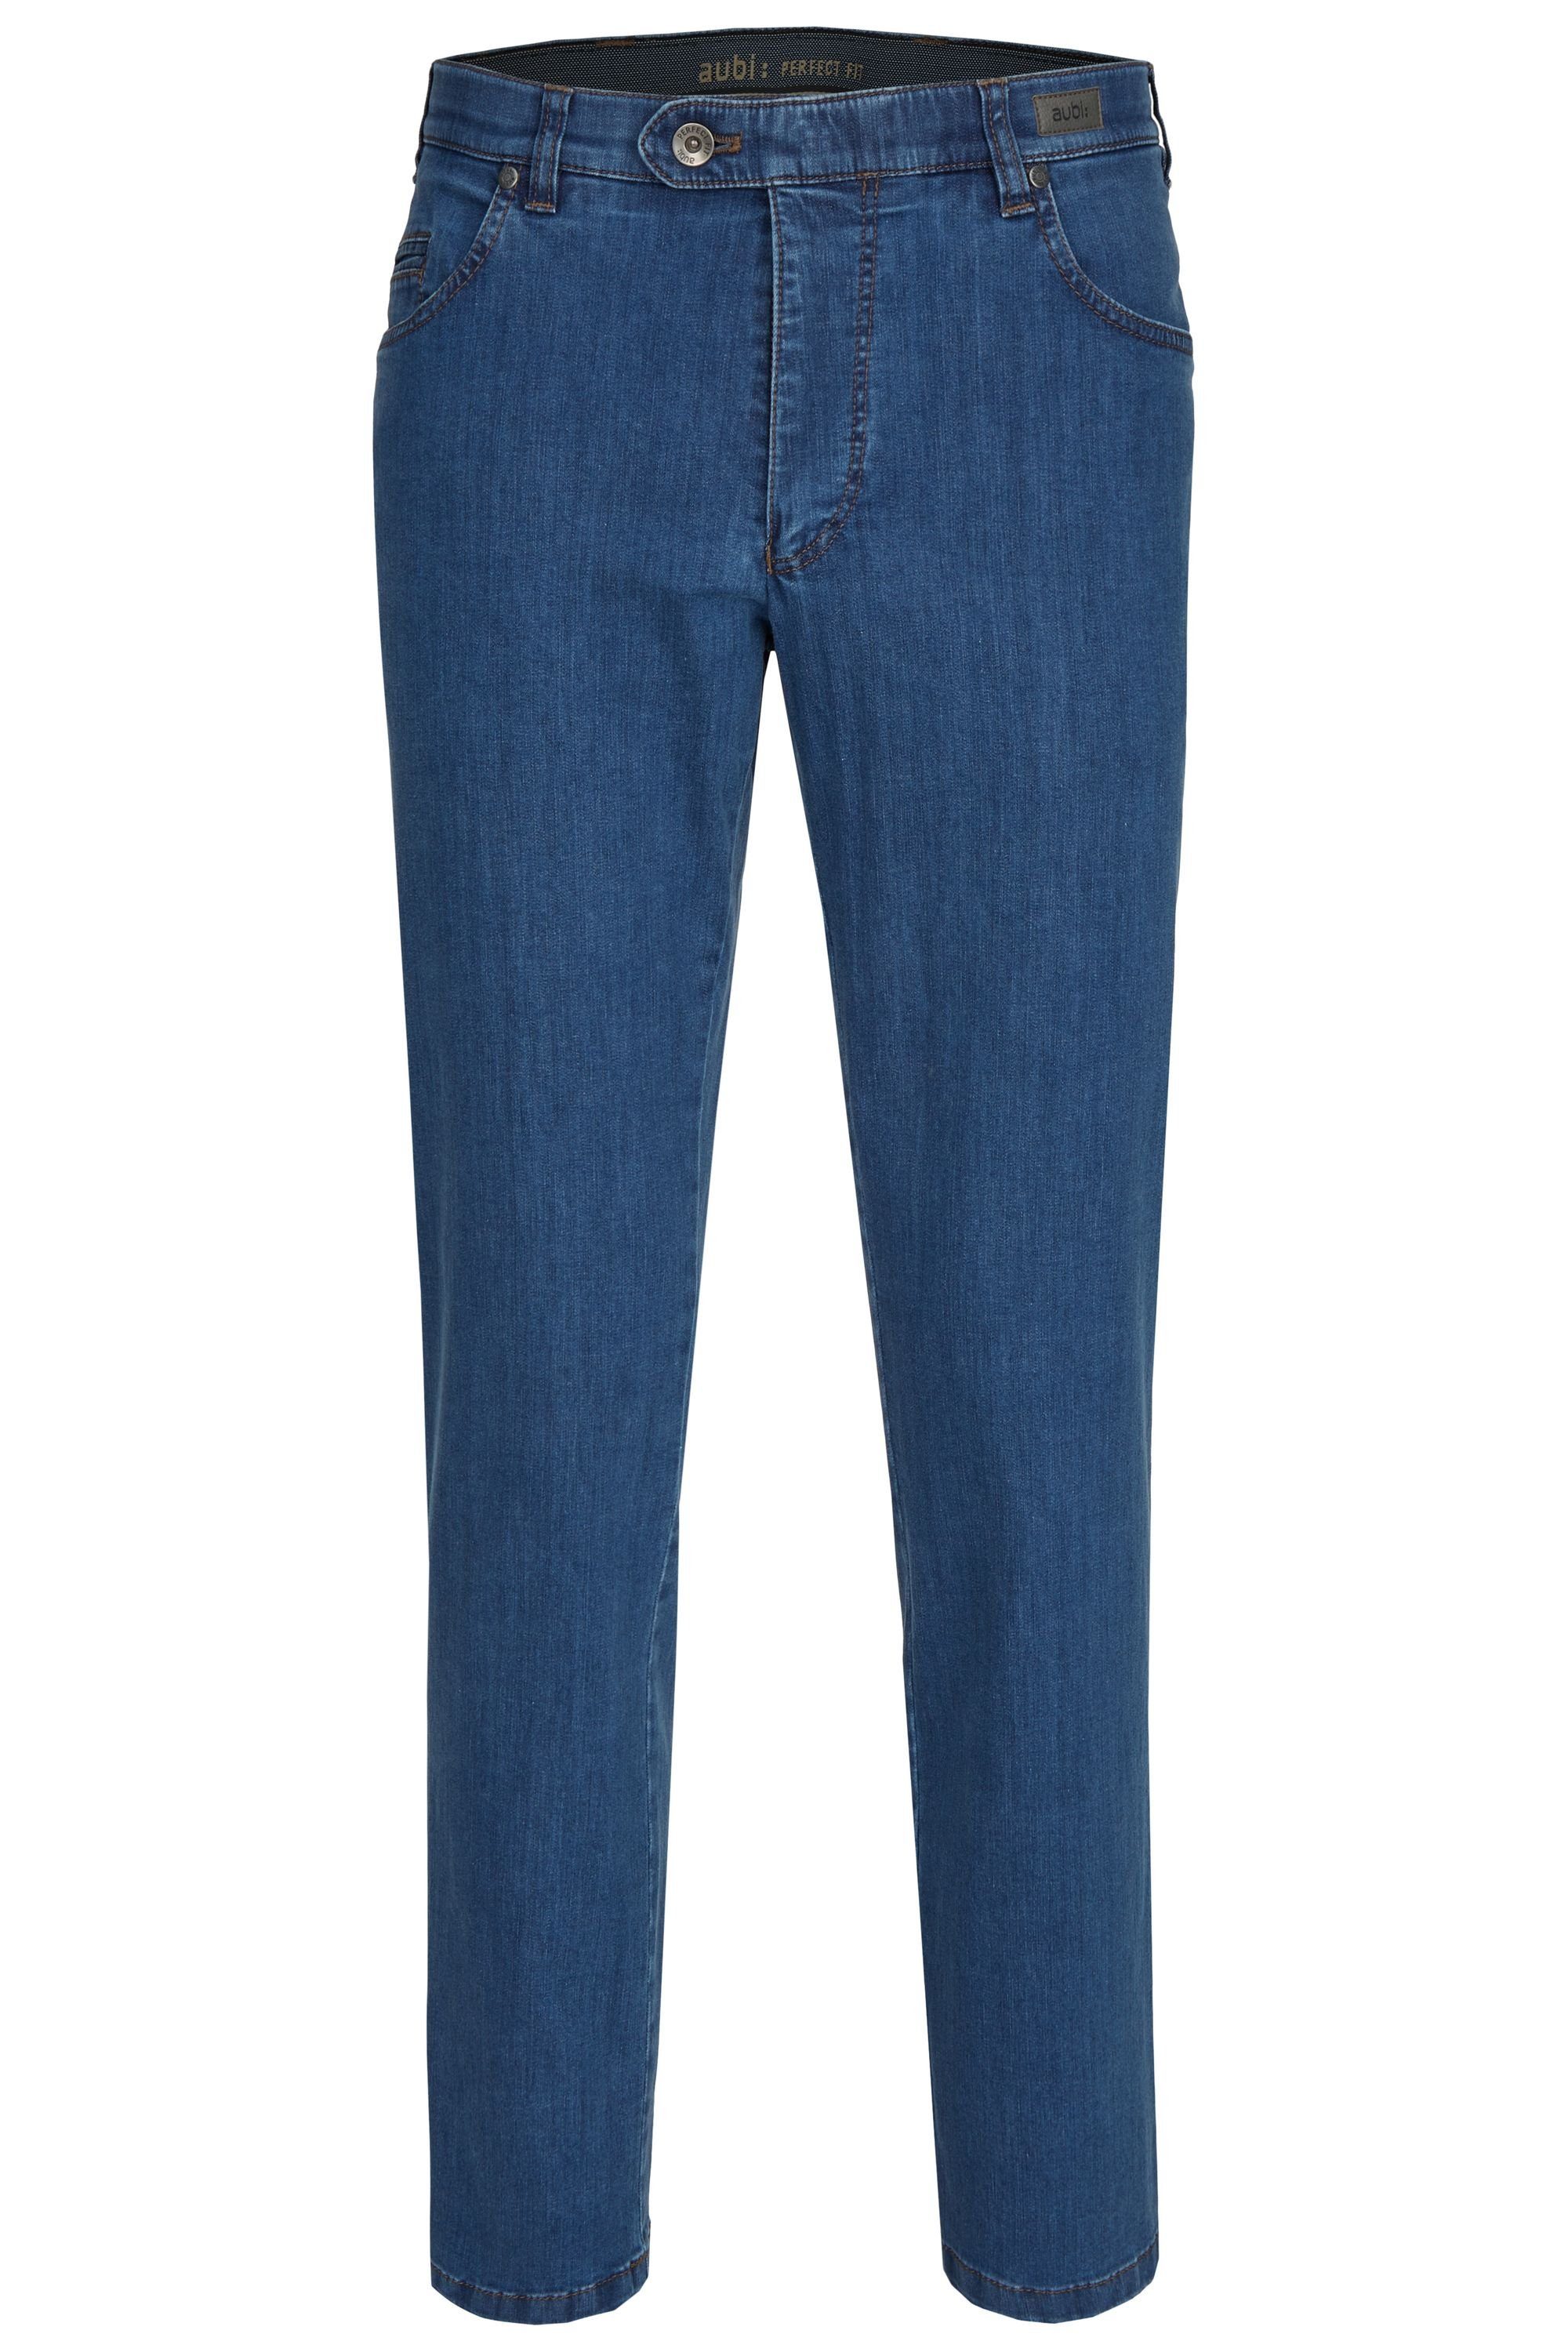 aubi: Bequeme Jeans aubi Perfect Fit Herren Sommer Jeans Hose Stretch aus Baumwolle High Flex Modell 577 stone (46)